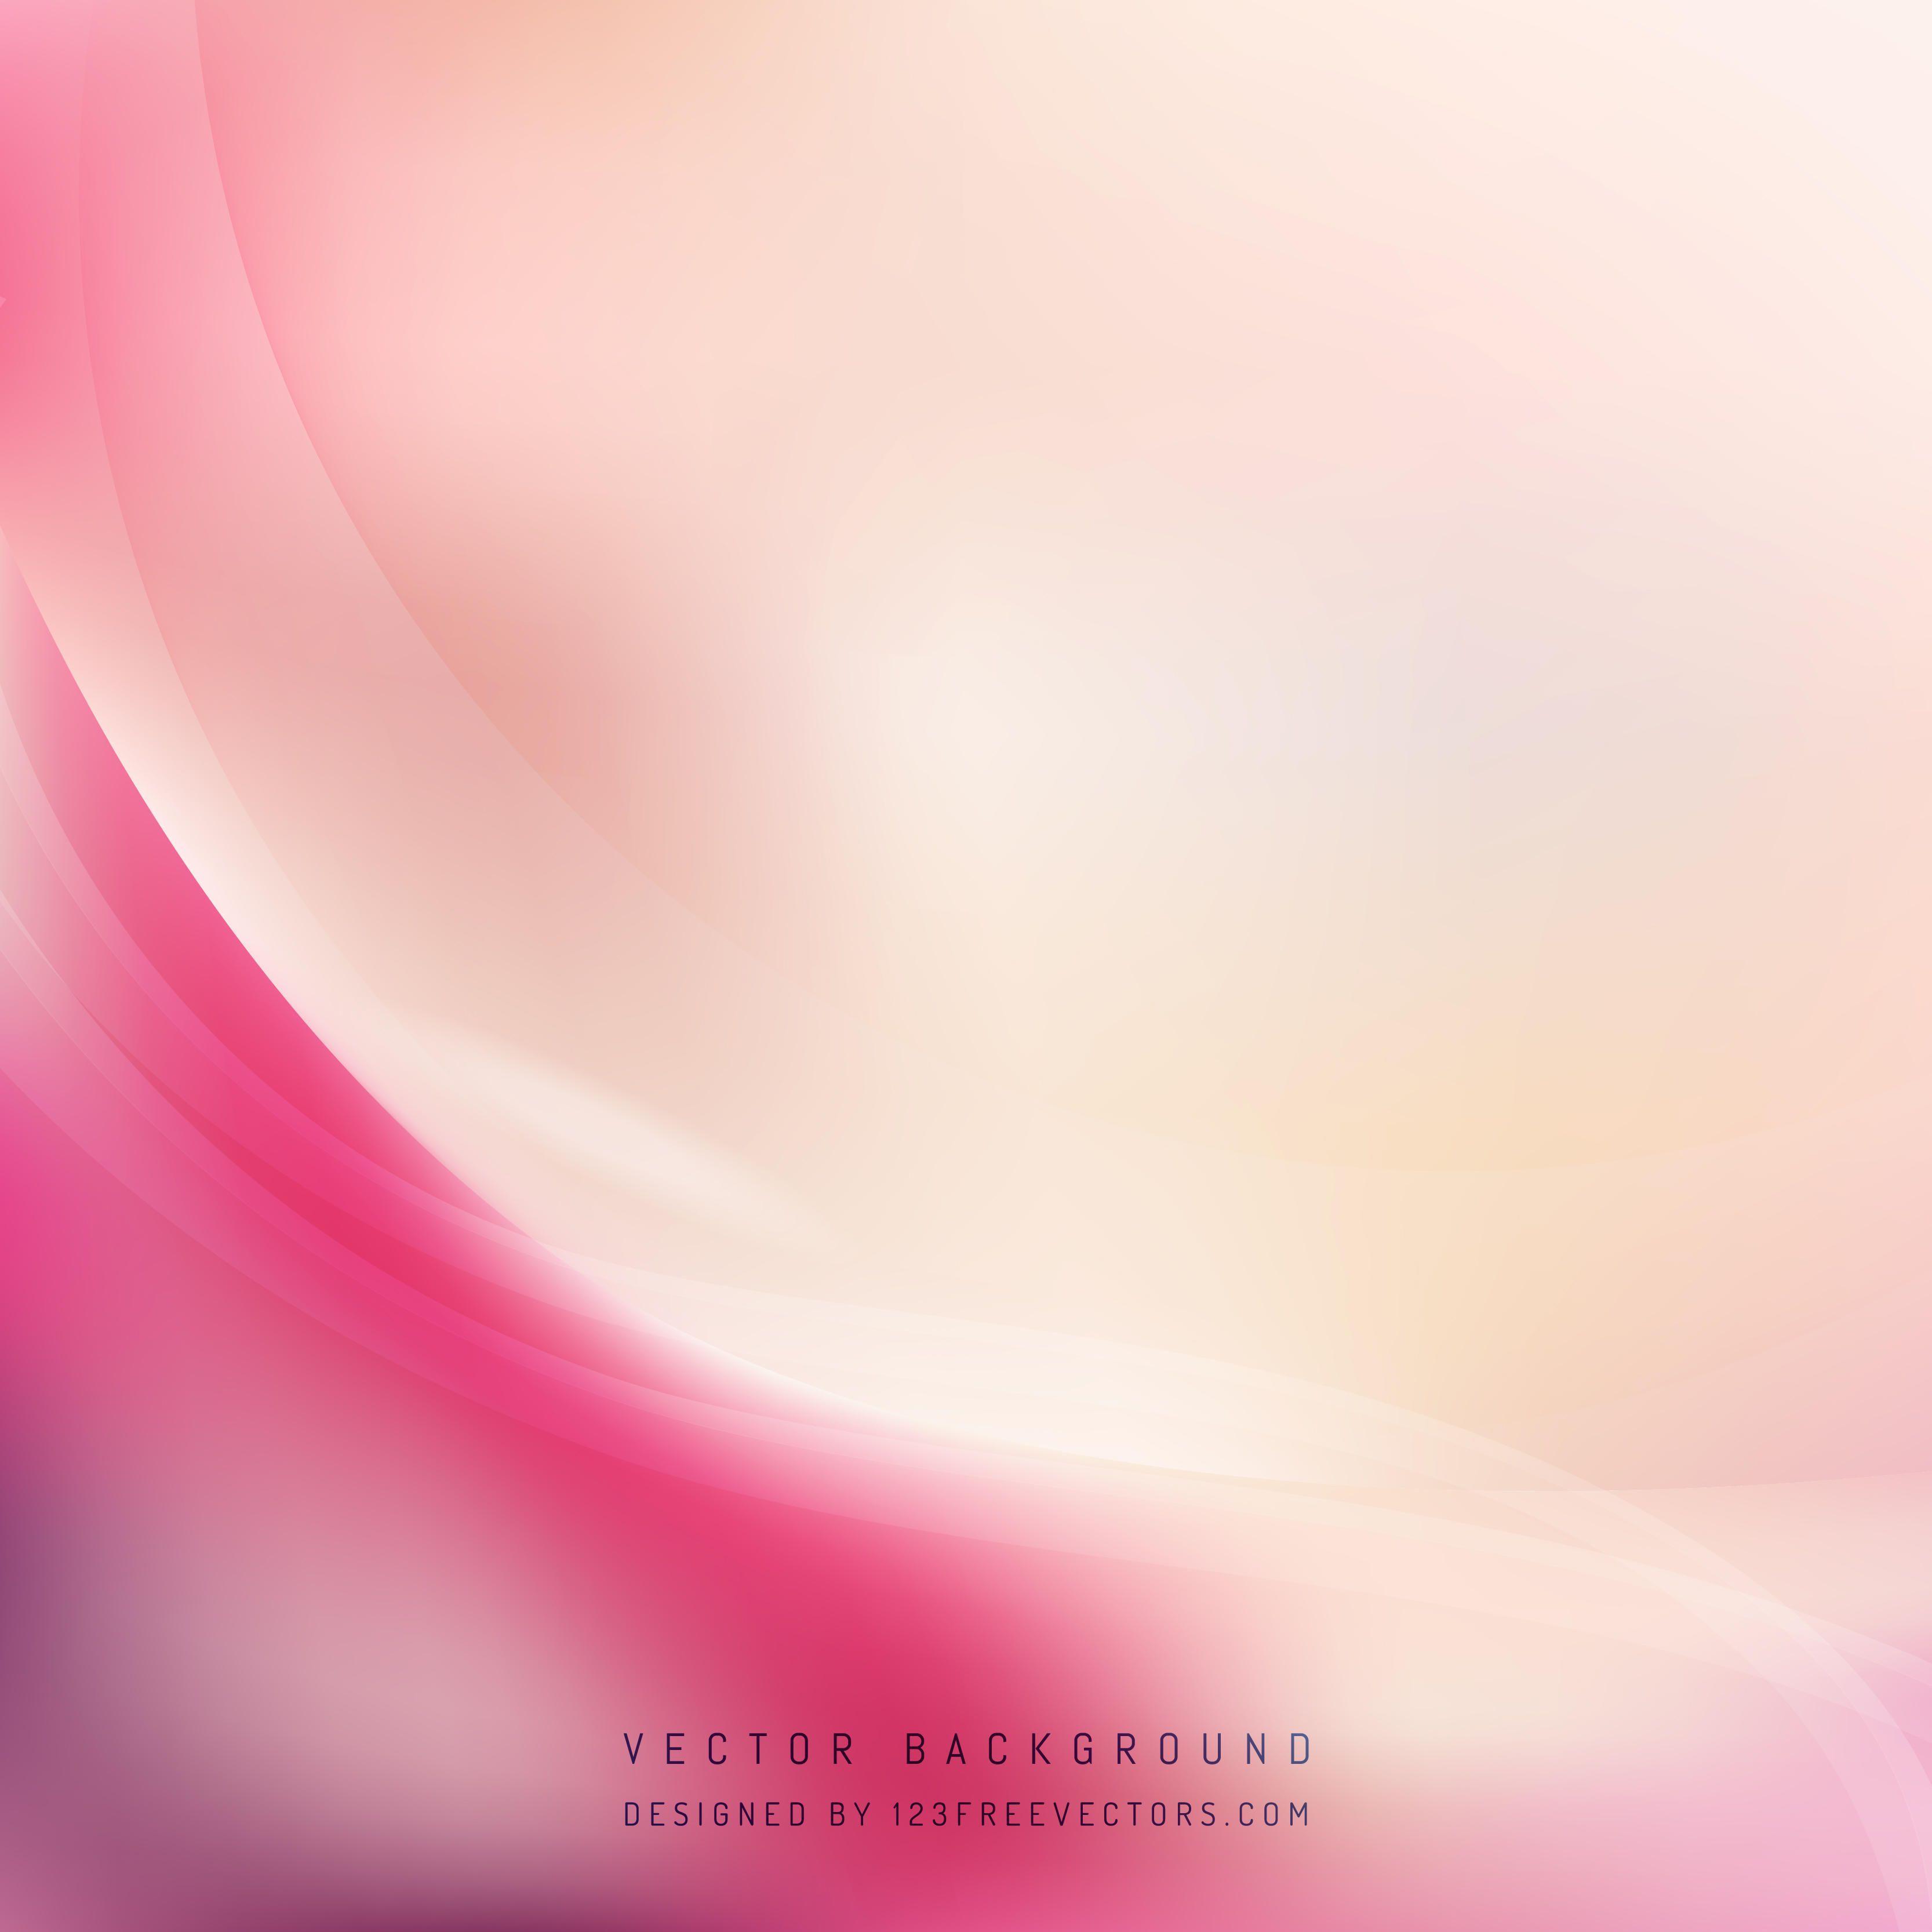 Light Pink Background Vectors. Download Free Vector Art